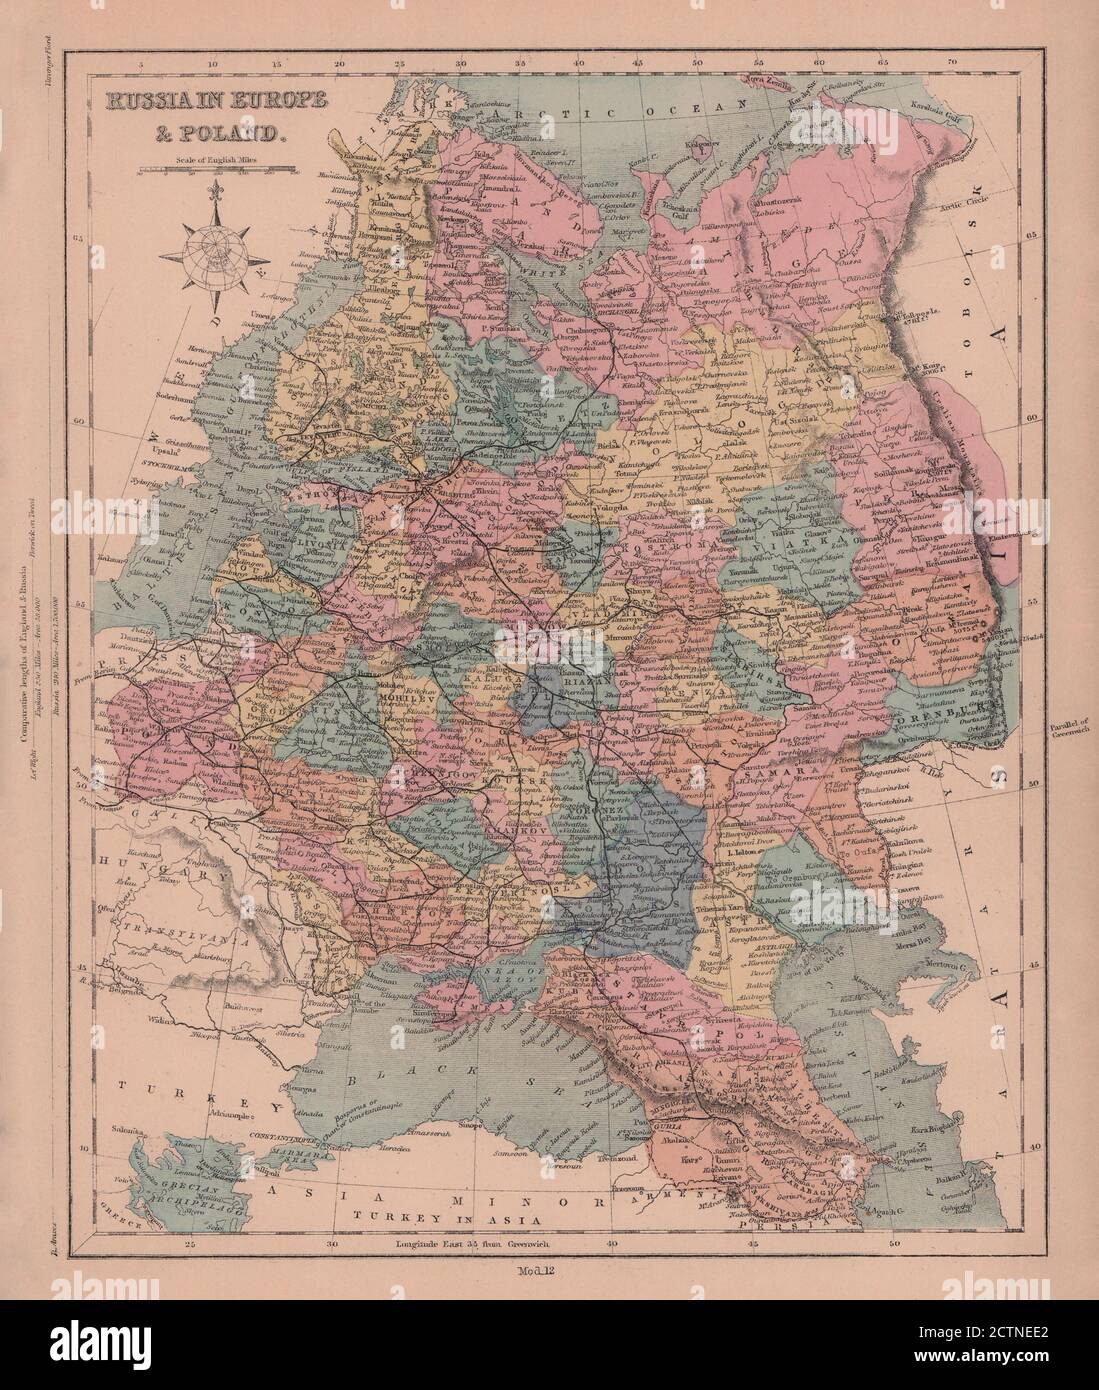 Russia in Europe & Poland. Ukraine Caucasus Finland Baltics. HUGHES 1876 map Stock Photo